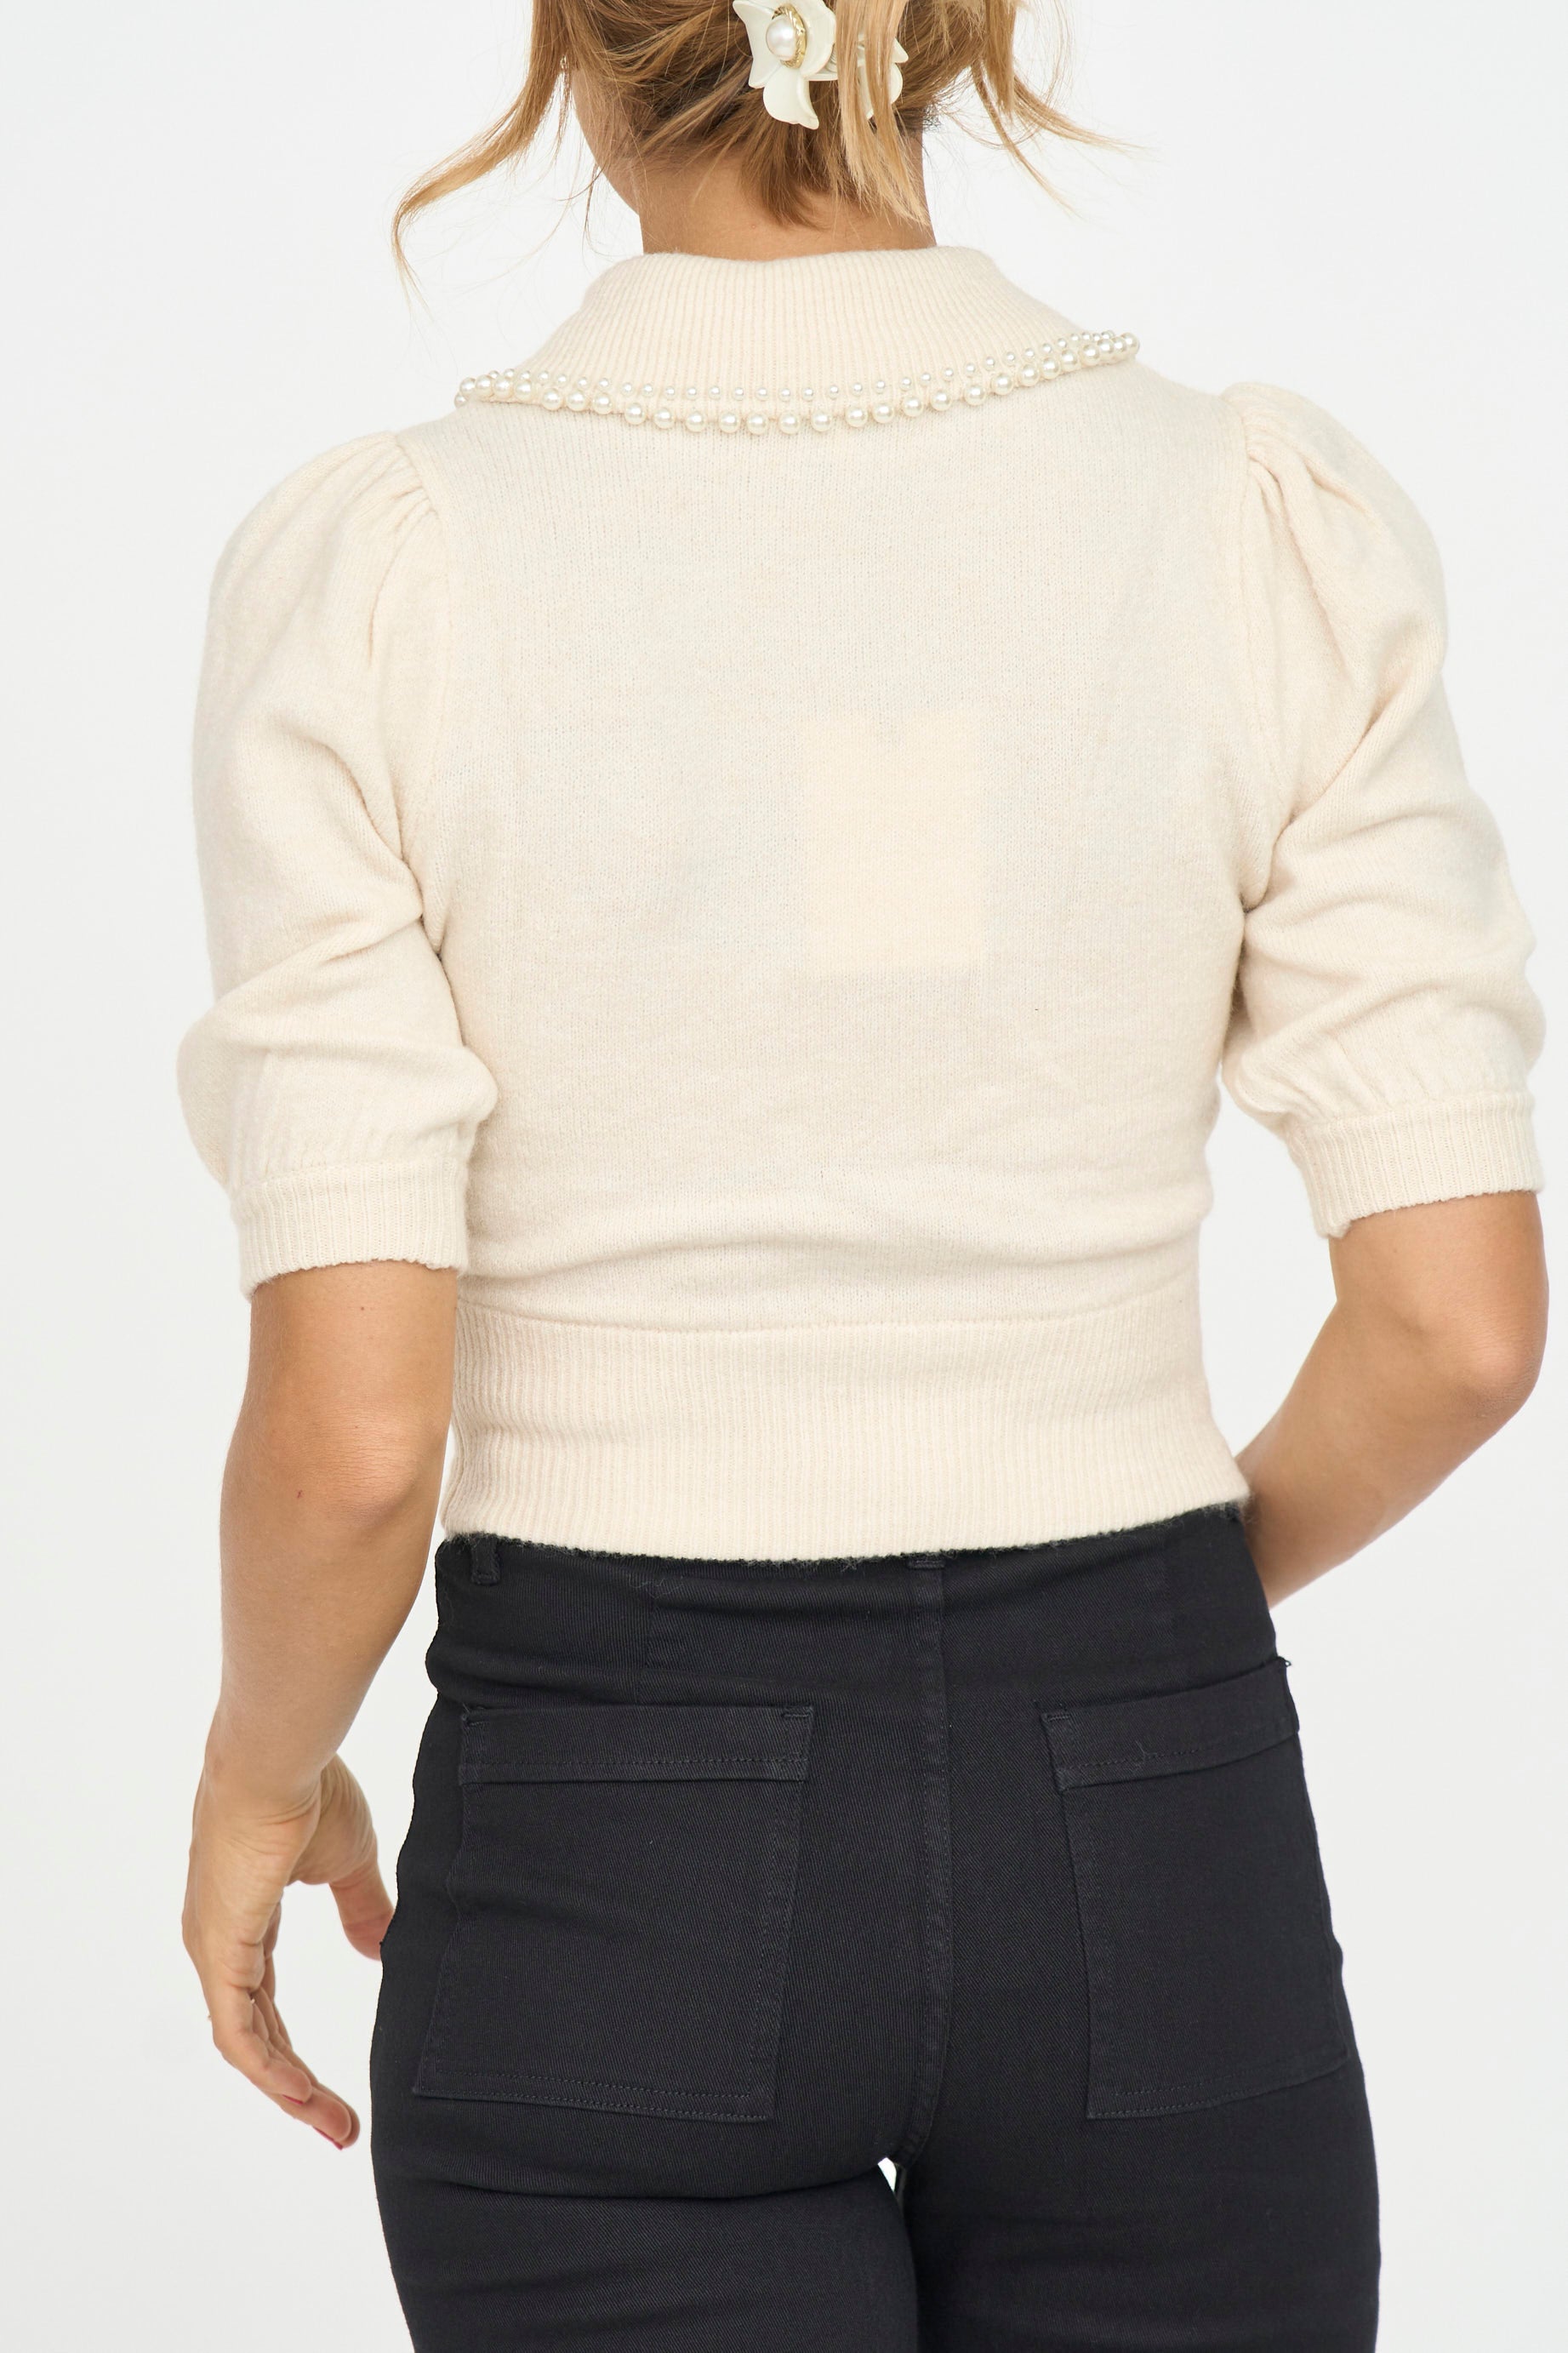 Pearl Collar Sweater Top